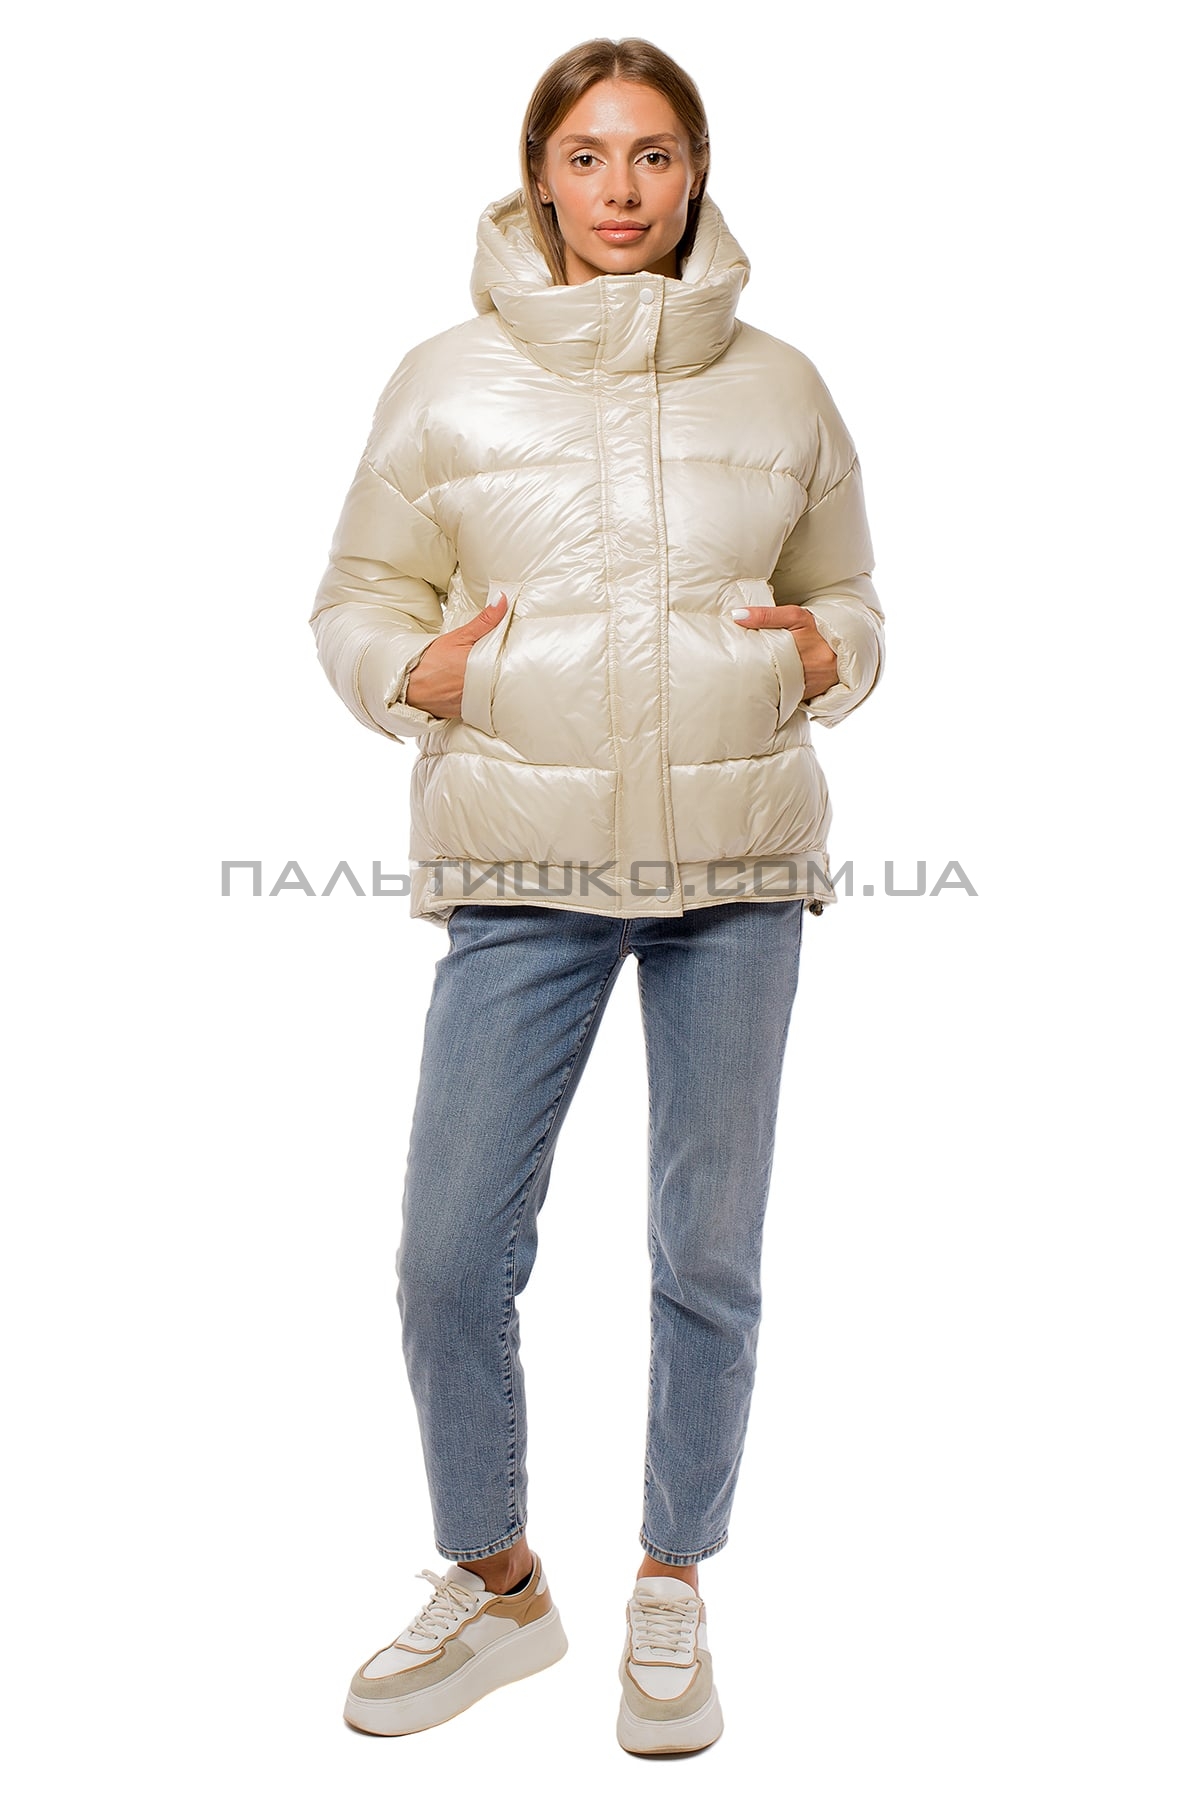  Женкская короткая куртка перламутровая белая